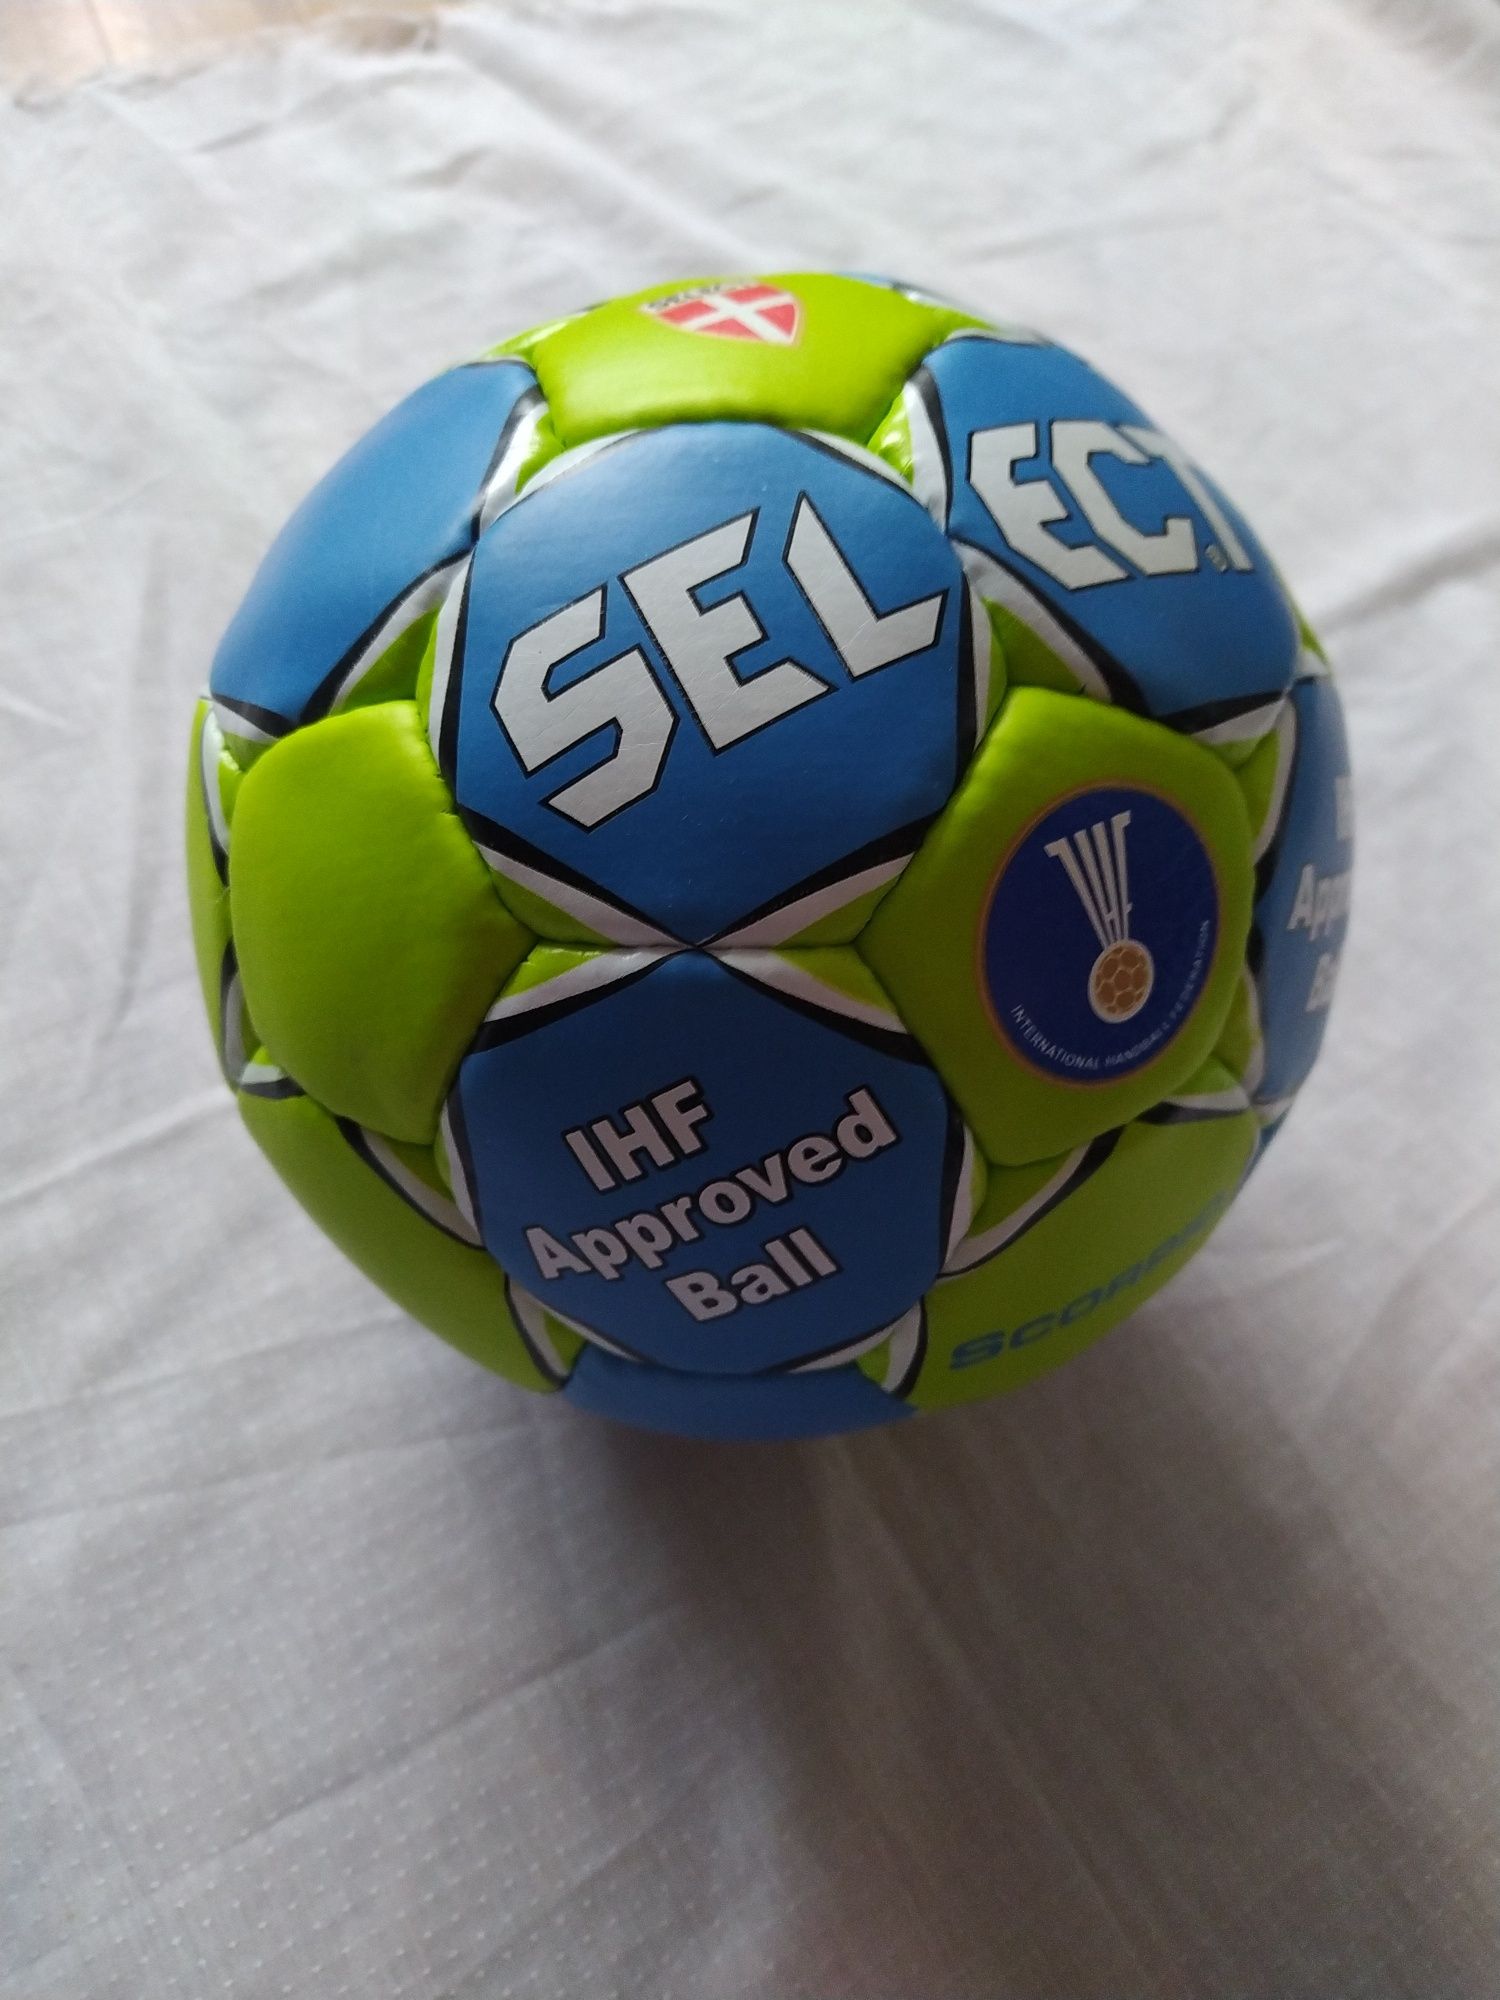 Гандбольный мяч Select Scorpio